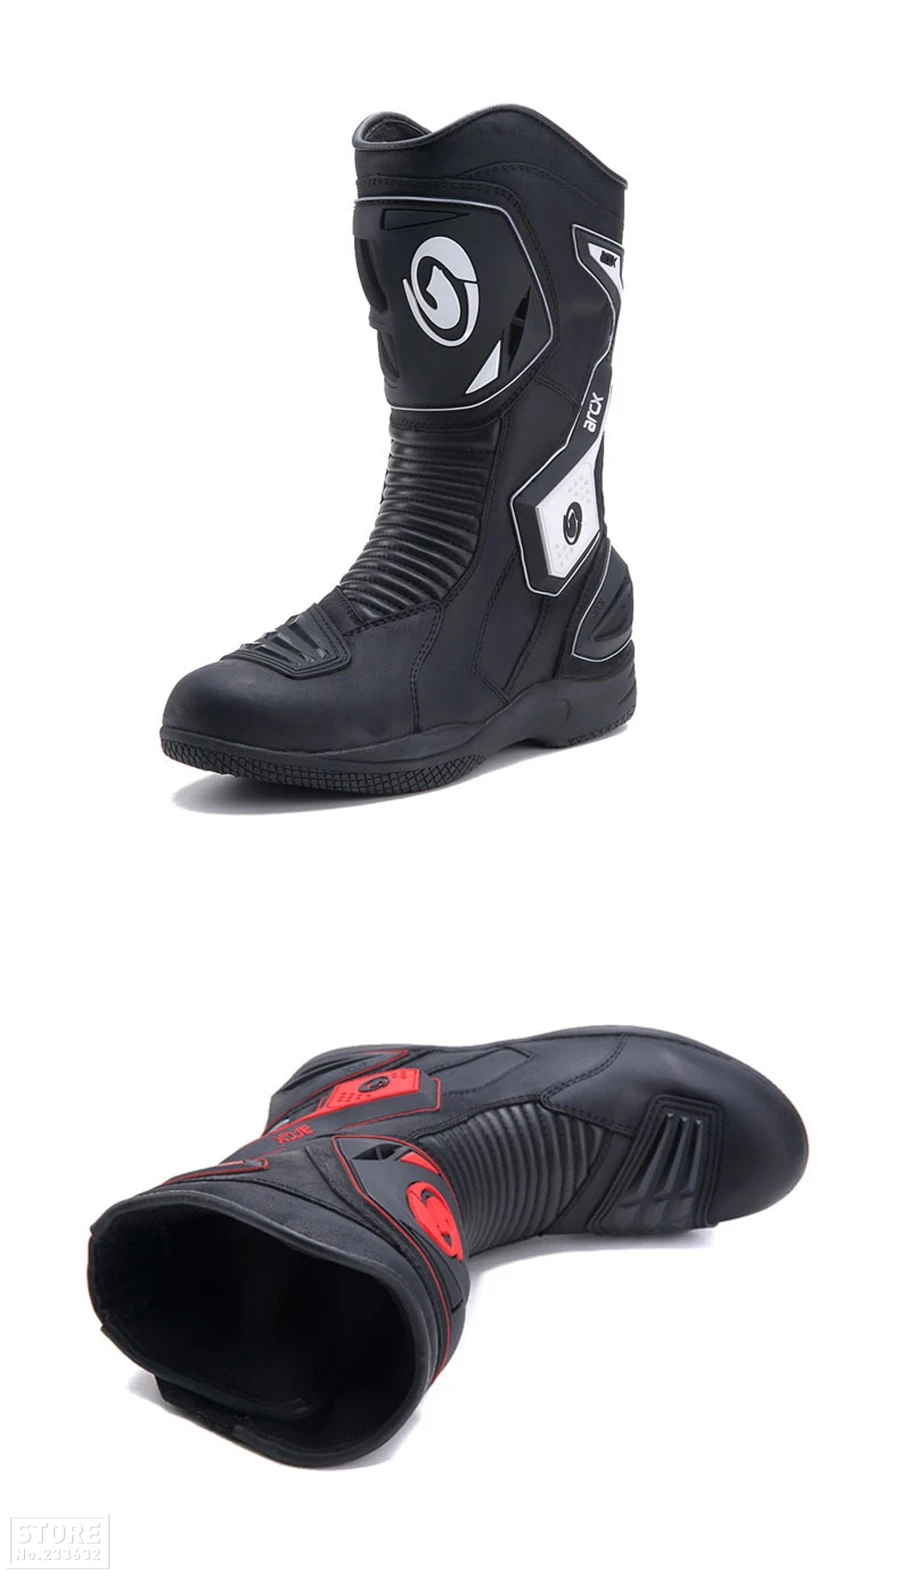 ARCX/ботинки в байкерском стиле; высококачественные кожаные ботинки для мотокросса; водонепроницаемые ботинки; Мужская обувь в байкерском стиле; обувь для верховой езды; Botas